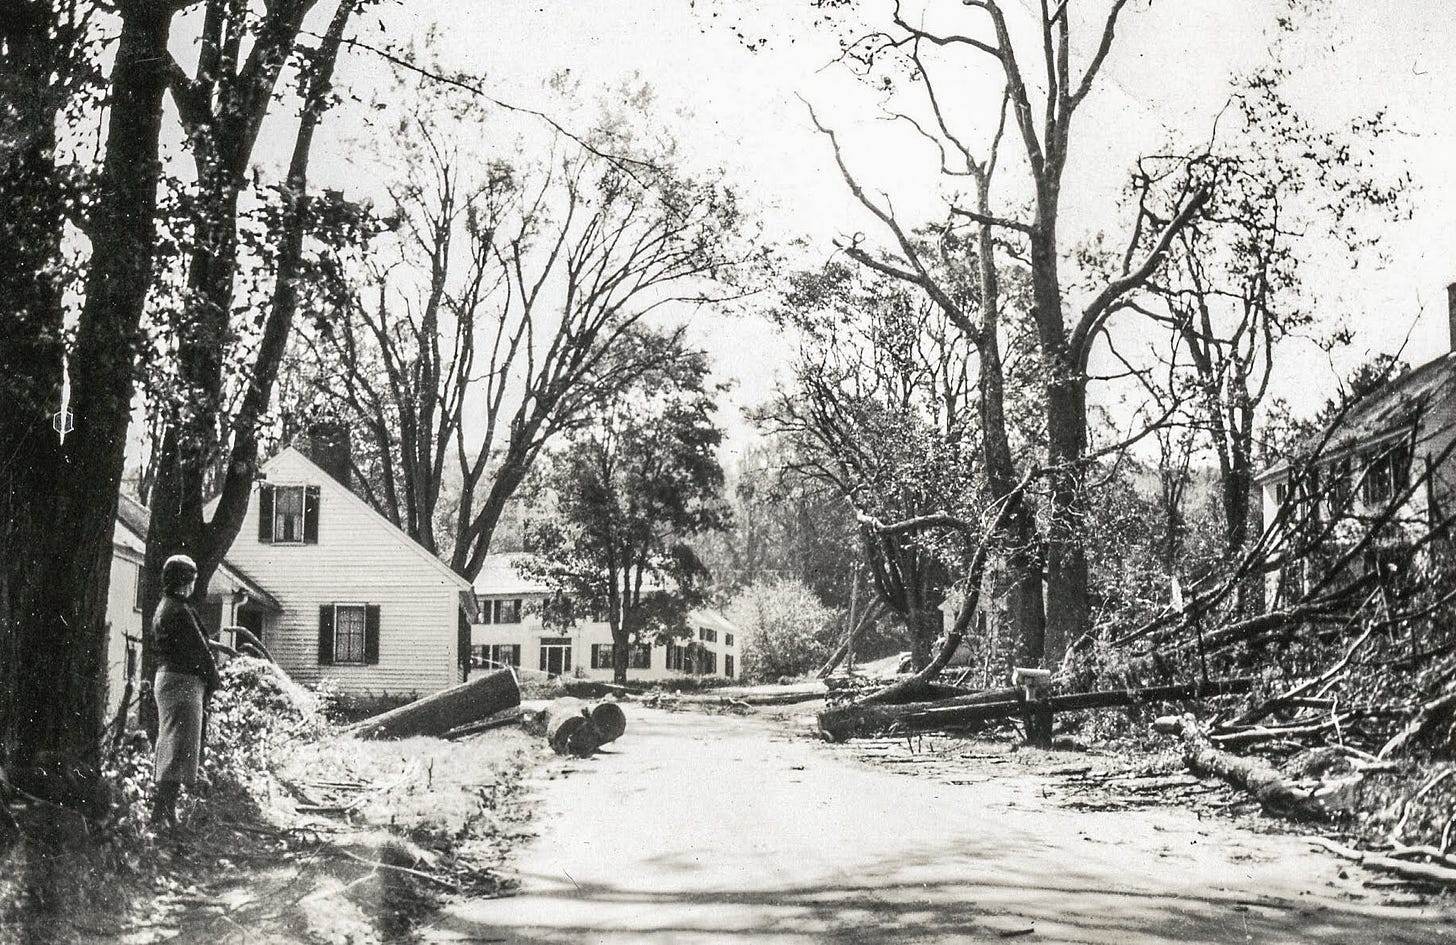 1938 hurricane damage